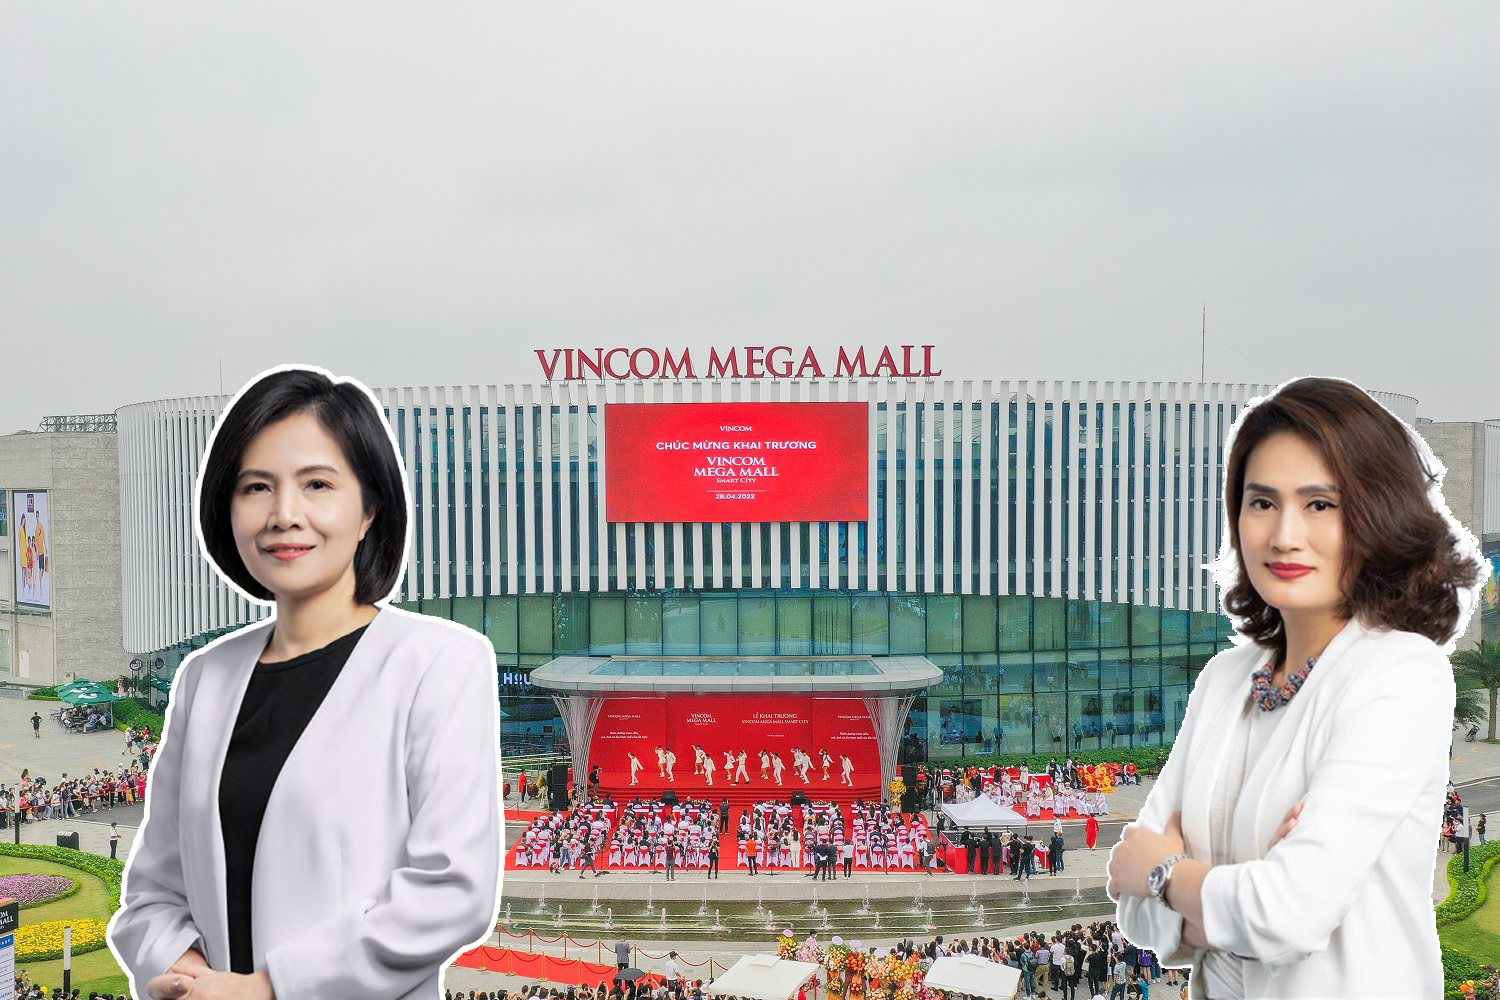 Vincom Retail thay Tổng giám đốc trong ngày Vingroup công bố thoái vốn - Ảnh 1.